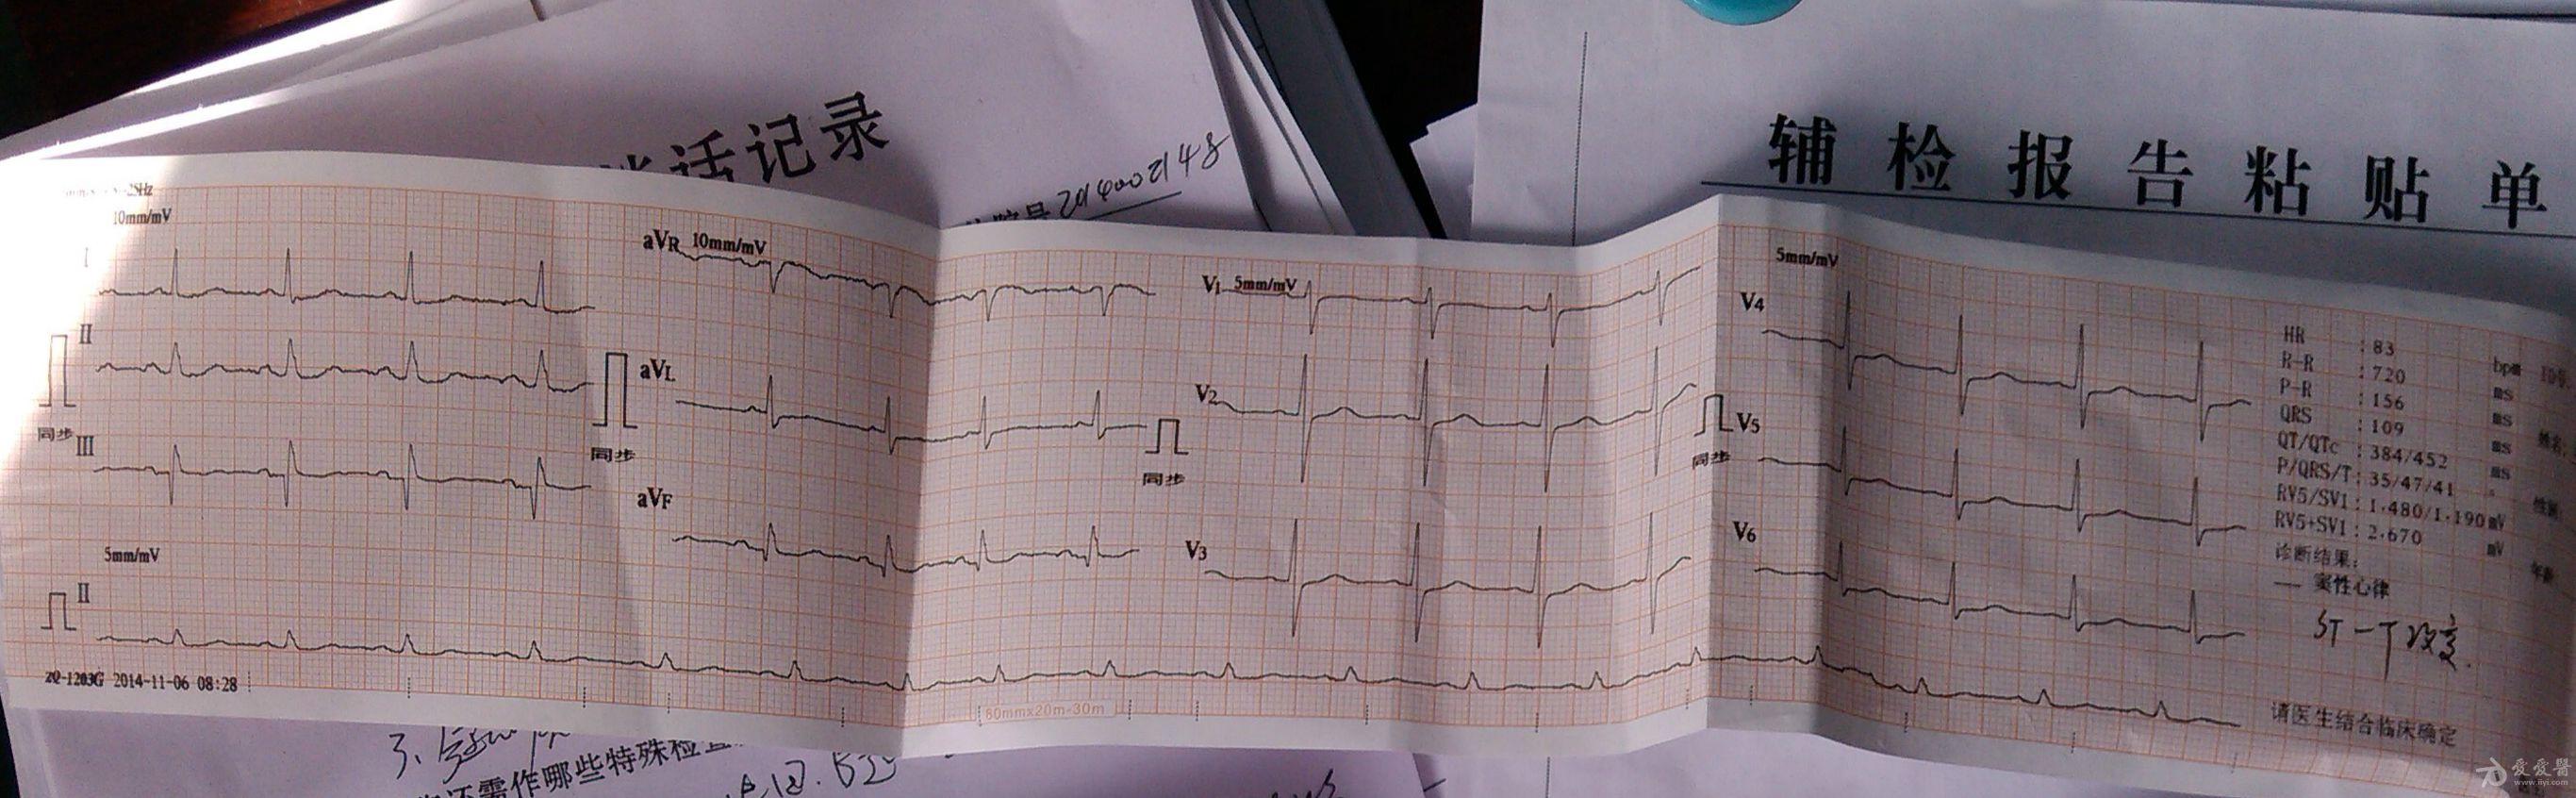 患者心跳骤停前3分钟心电图求分析